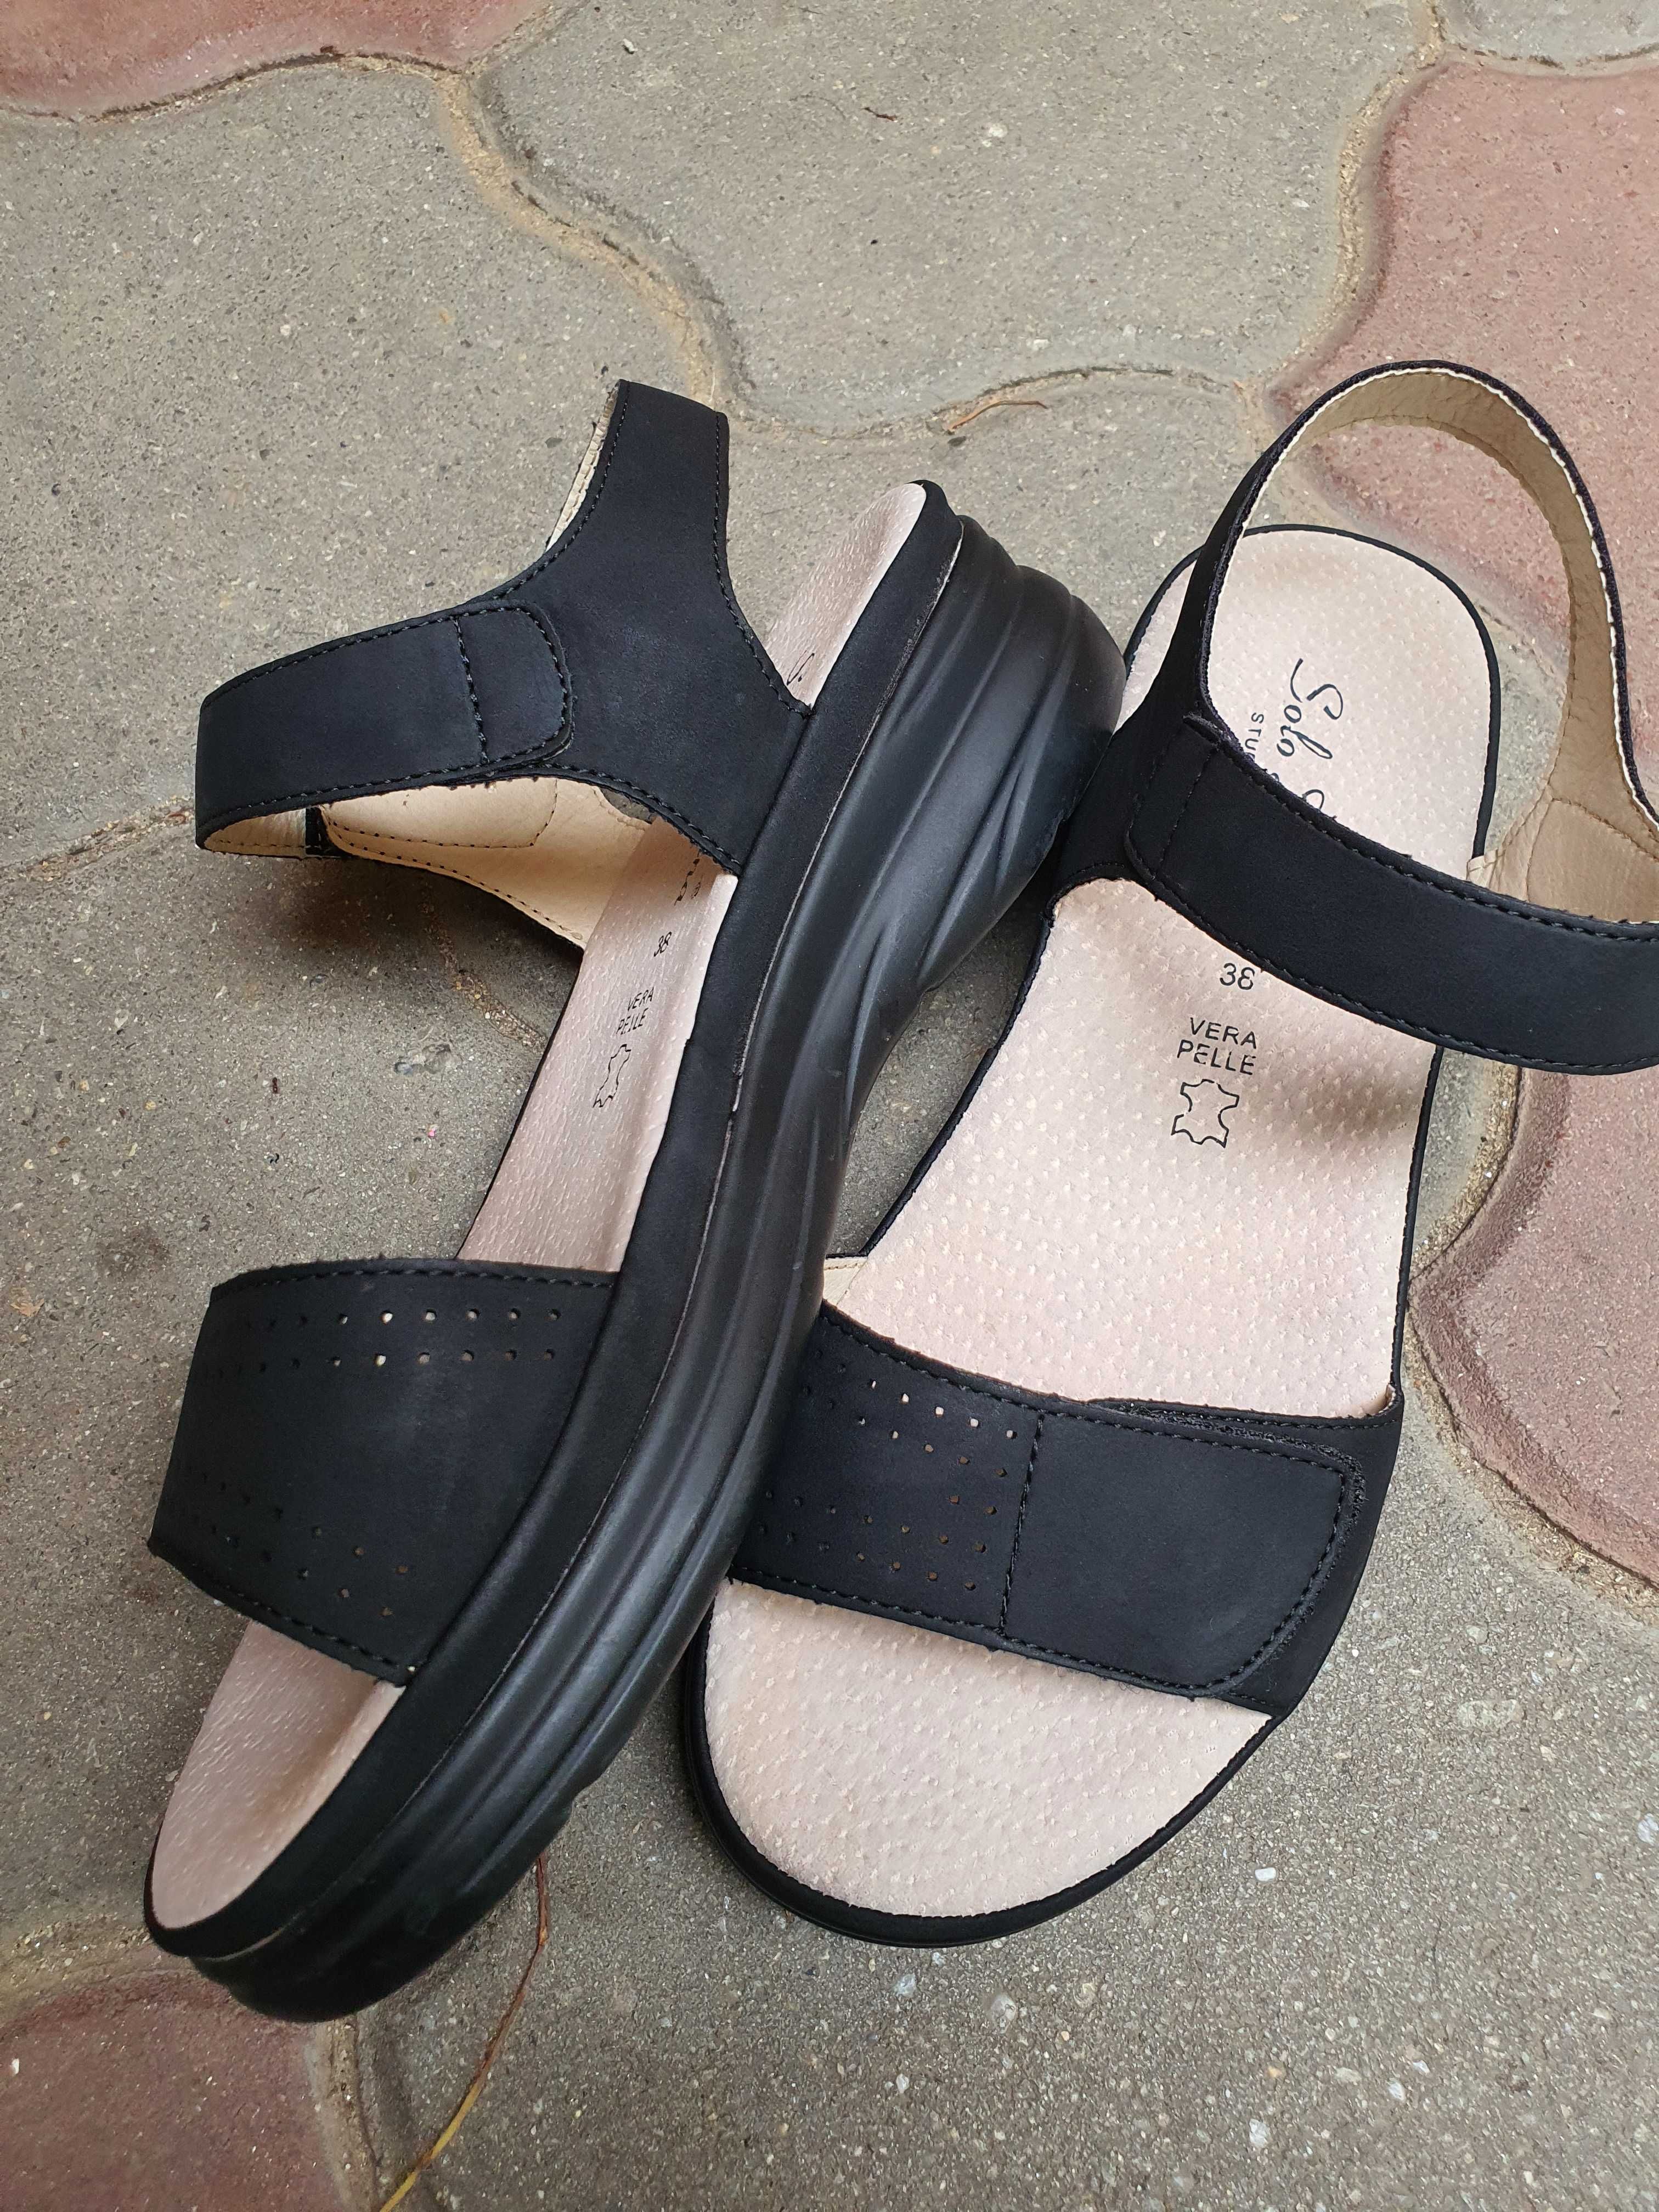 Sandale de dama negre Solo Donna, Benvenutti, 38